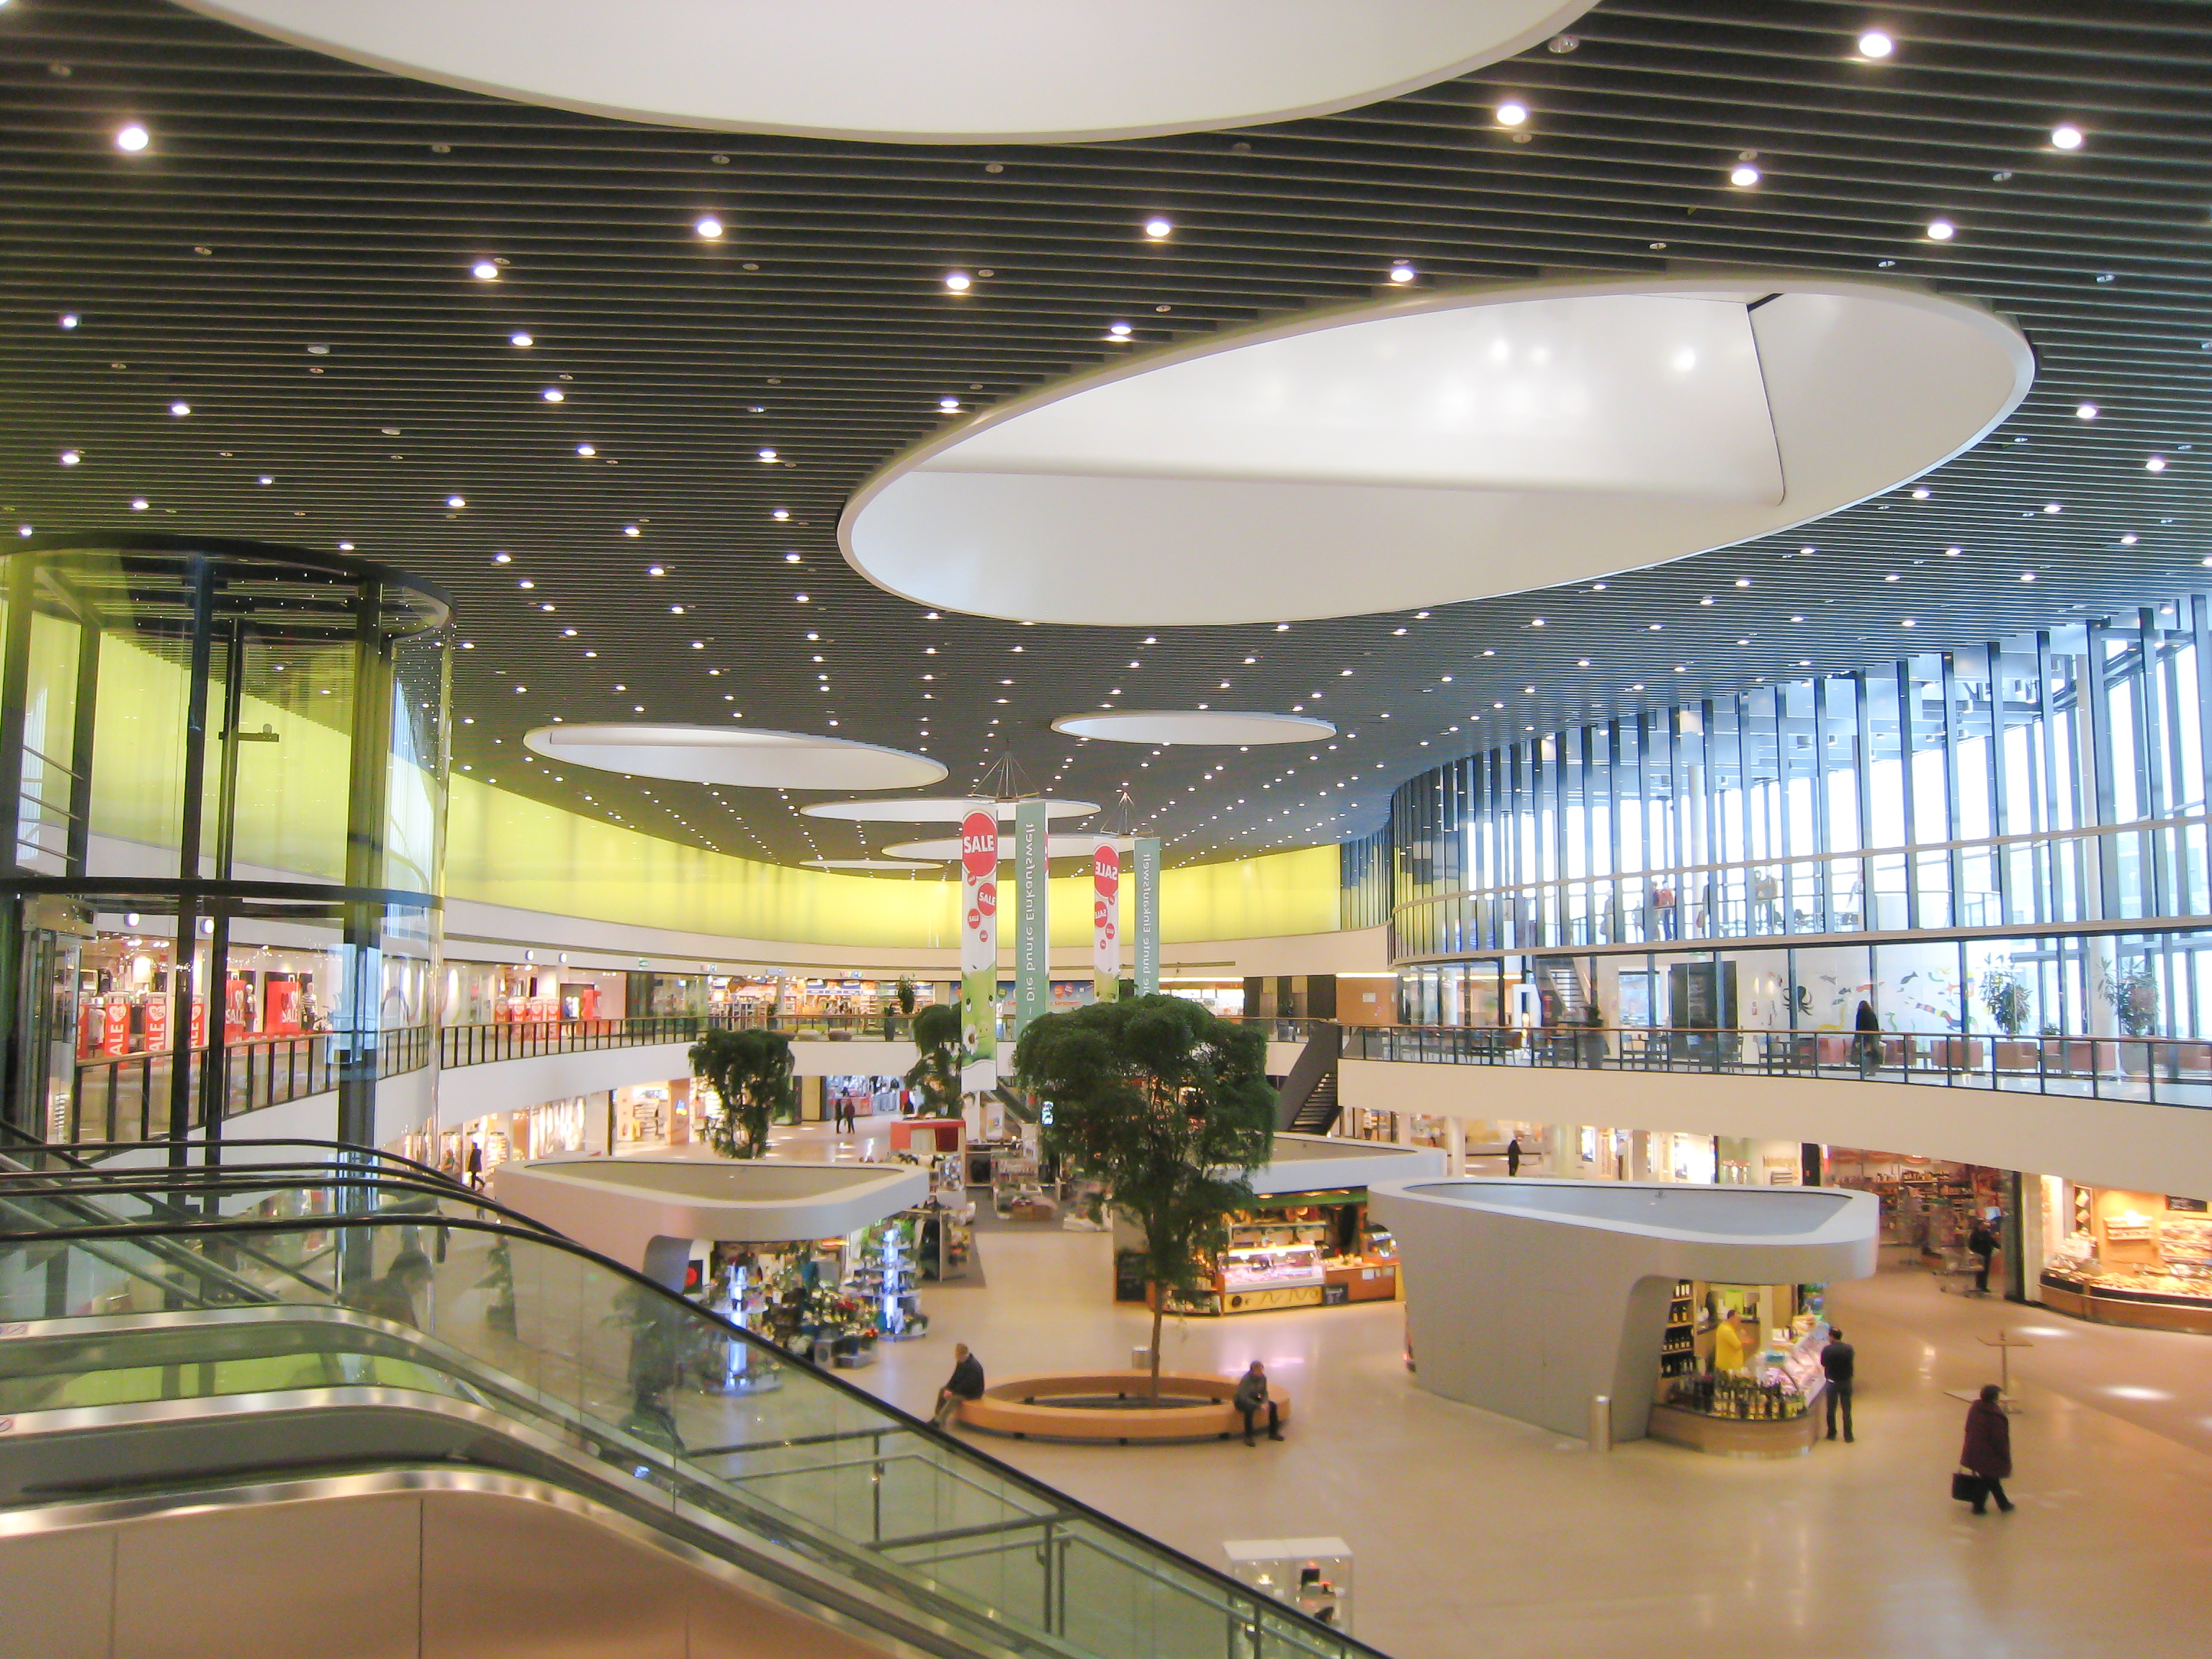 Innenansicht des modernen, hellen Einkaufszentrums mit großen Fenstern, Läden und Ständen.